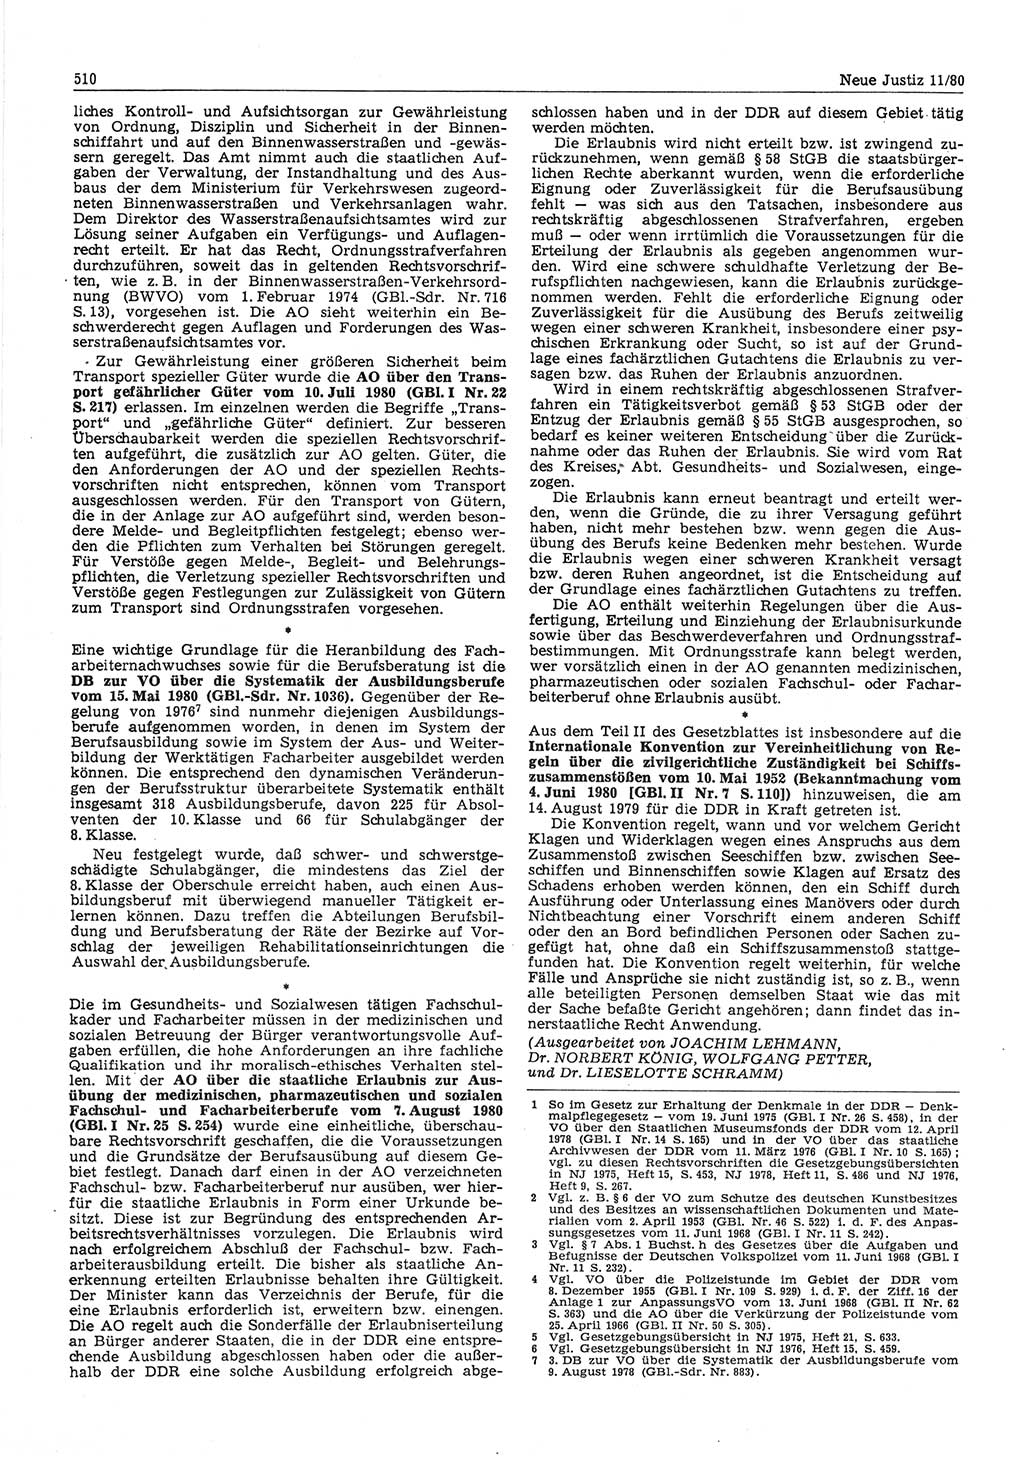 Neue Justiz (NJ), Zeitschrift für sozialistisches Recht und Gesetzlichkeit [Deutsche Demokratische Republik (DDR)], 34. Jahrgang 1980, Seite 510 (NJ DDR 1980, S. 510)